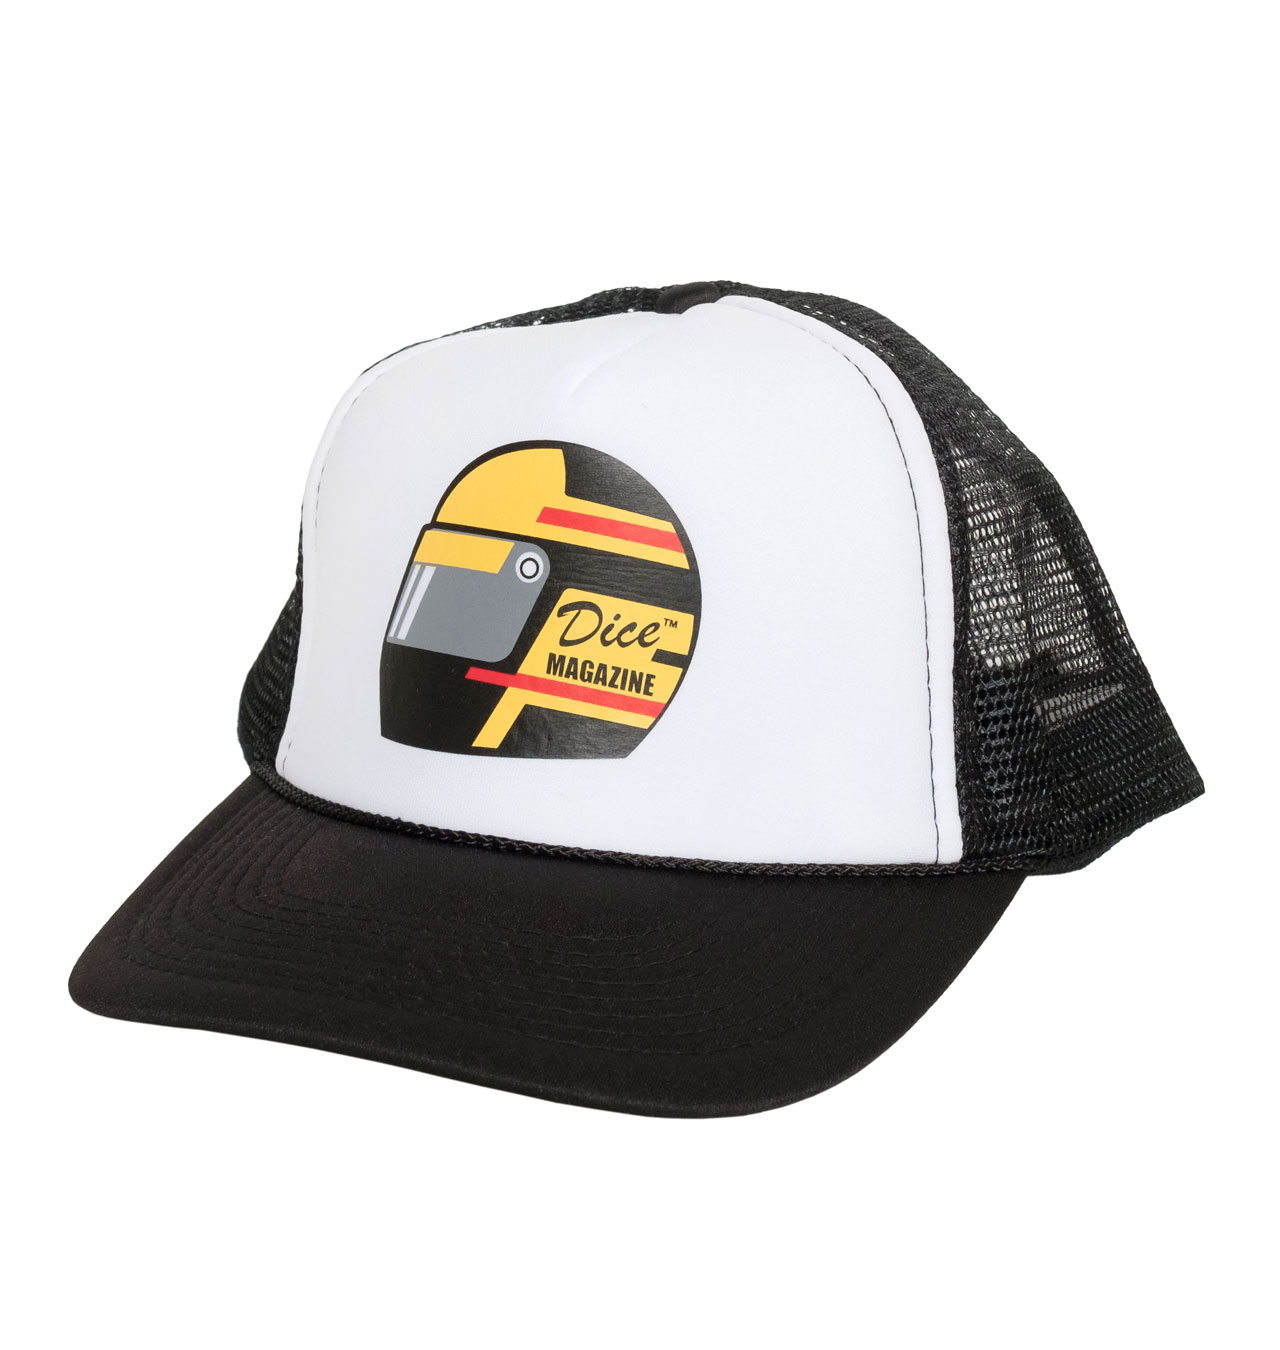 DicE - Helmet Trucker Cap - Black/White